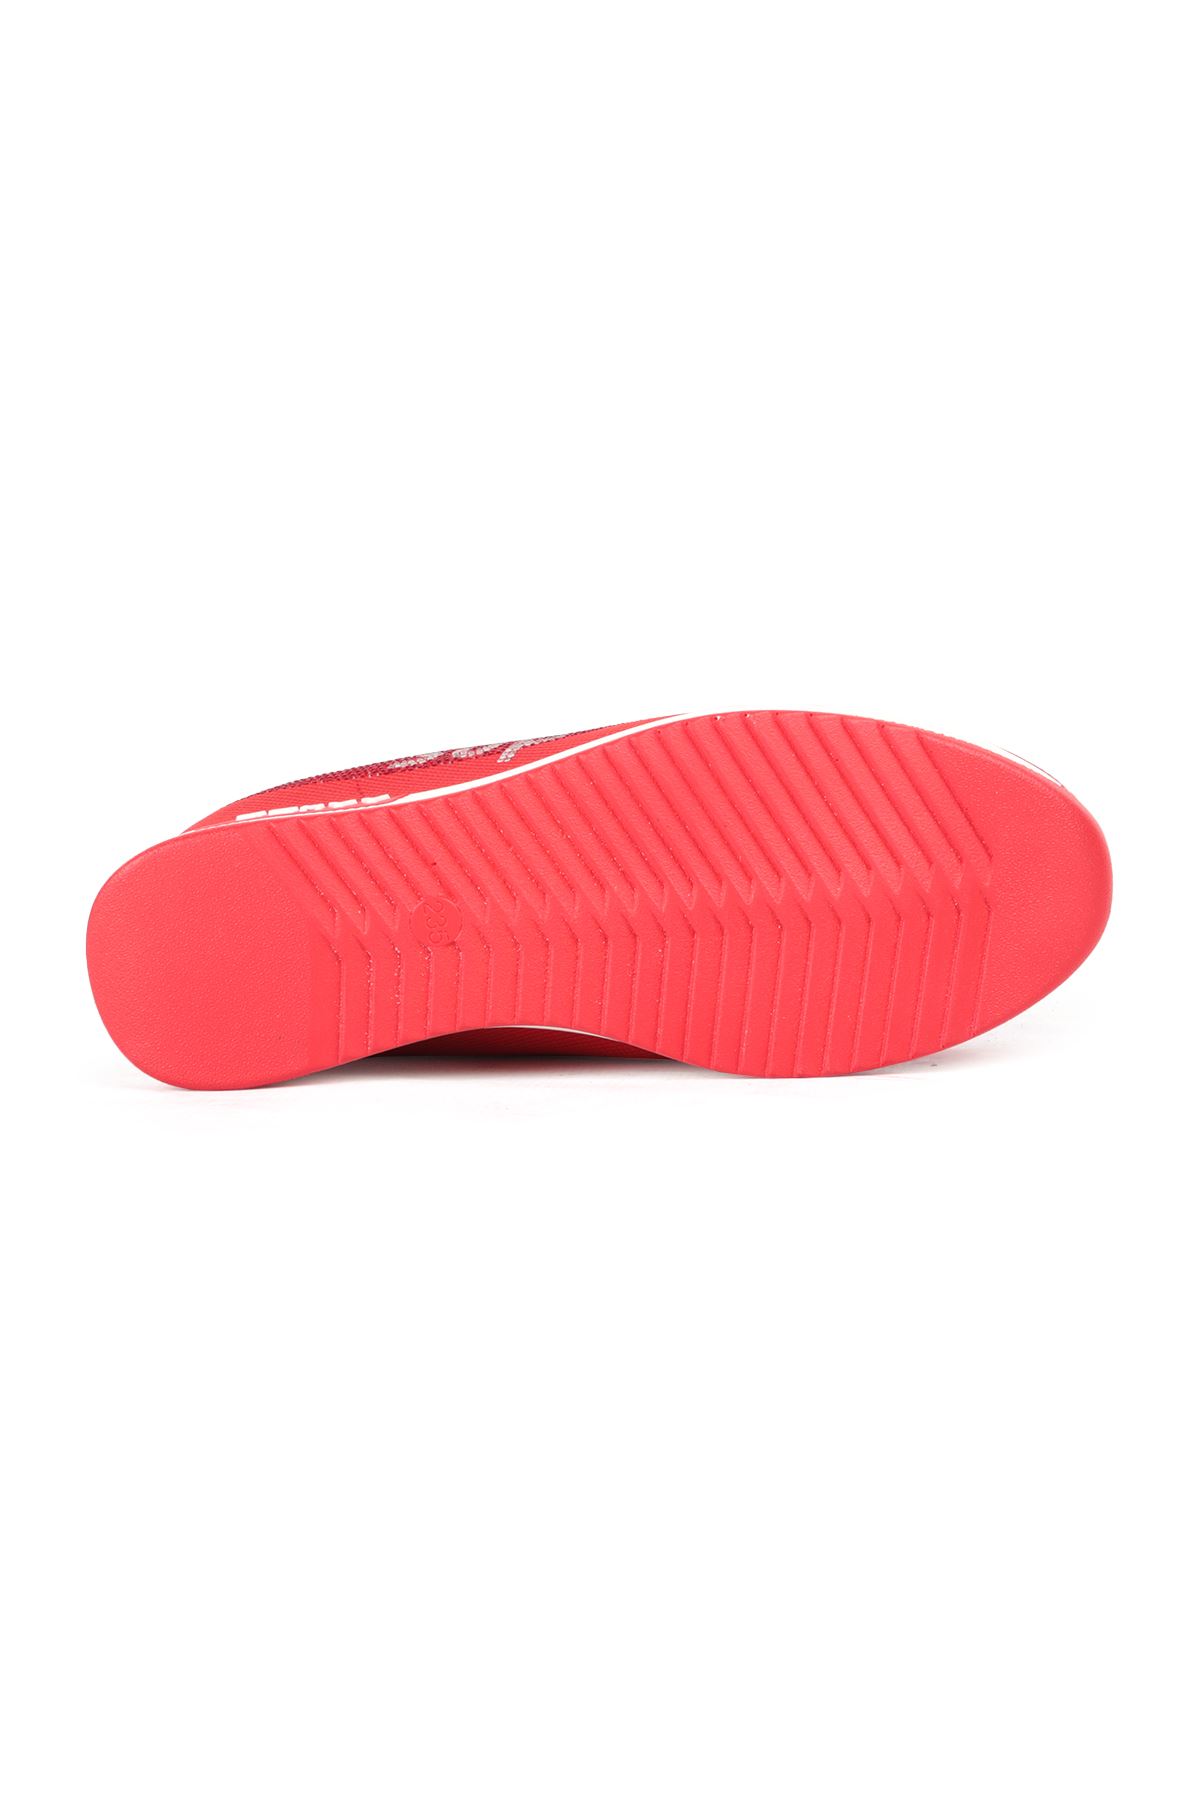 Guja 302 Kırmızı Kadın Spor Ayakkabı